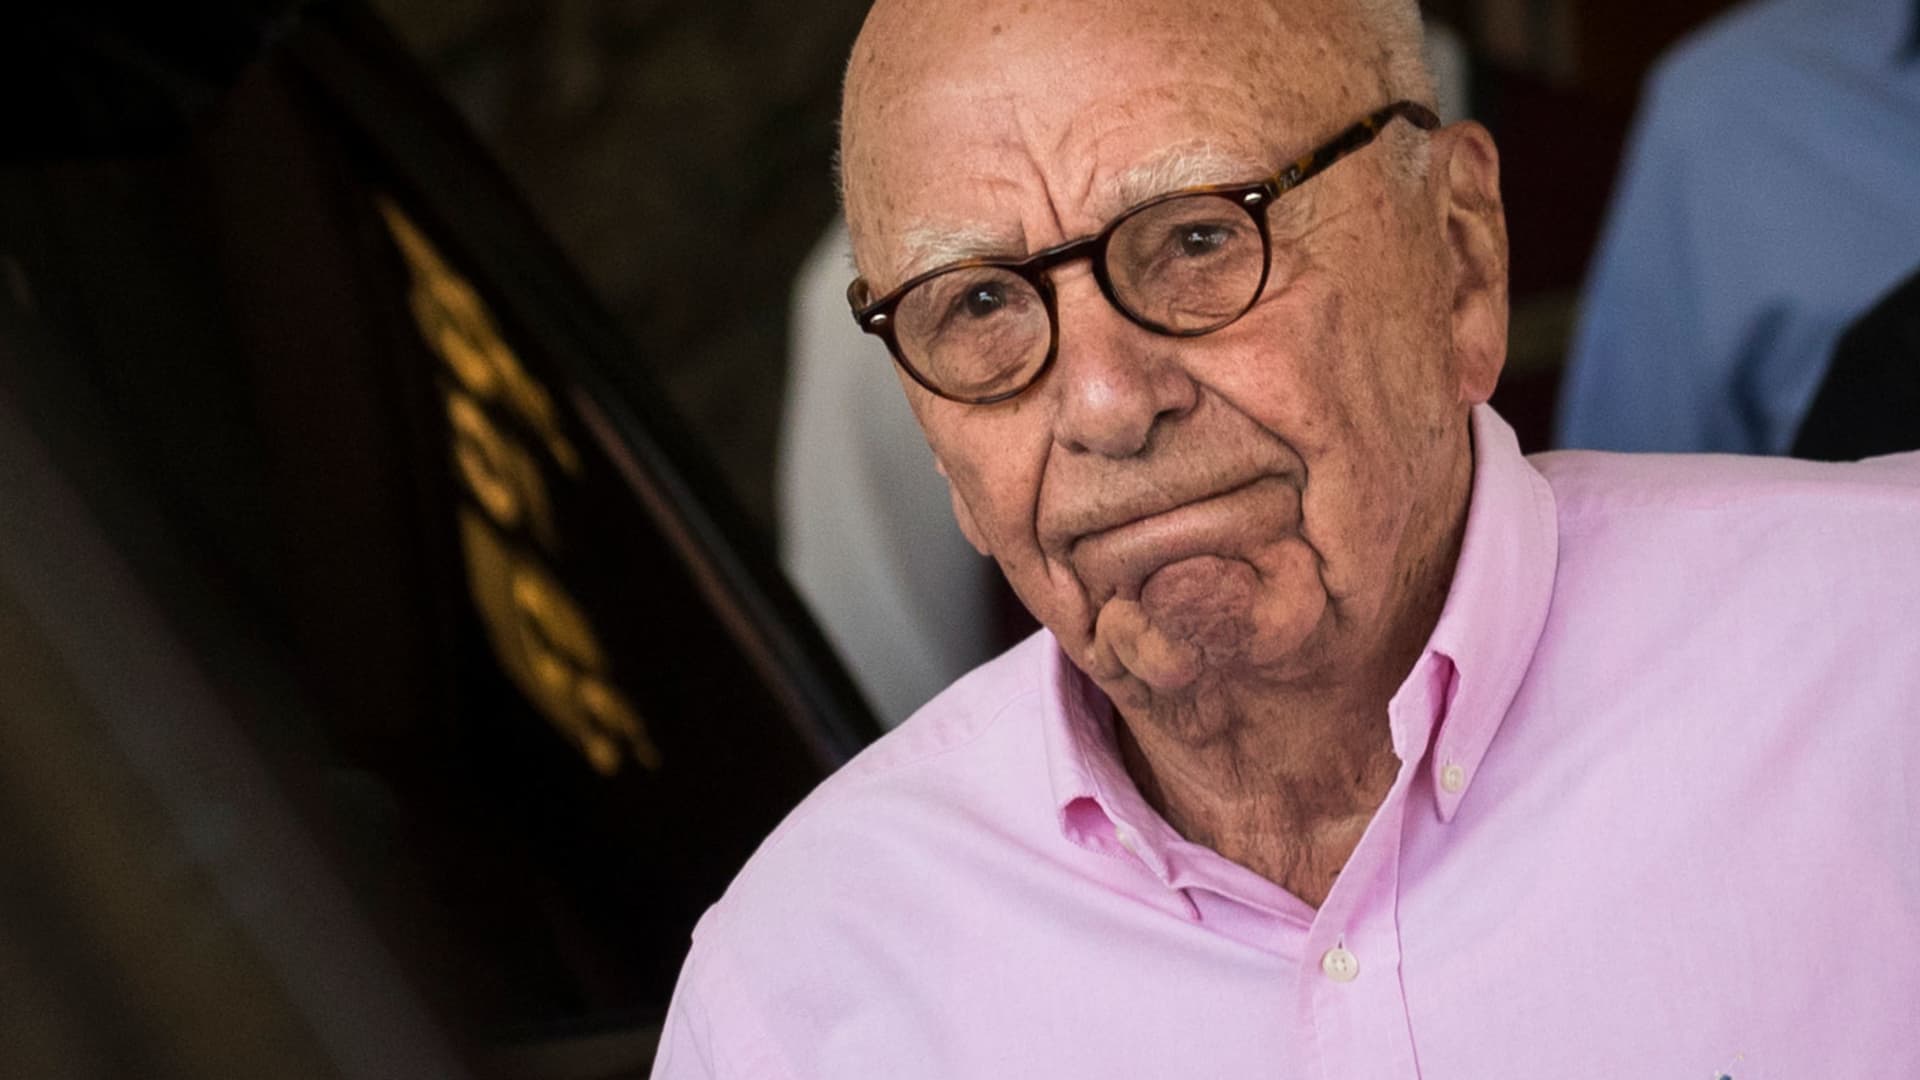 Rupert Murdoch cancels Fox News merger proposal